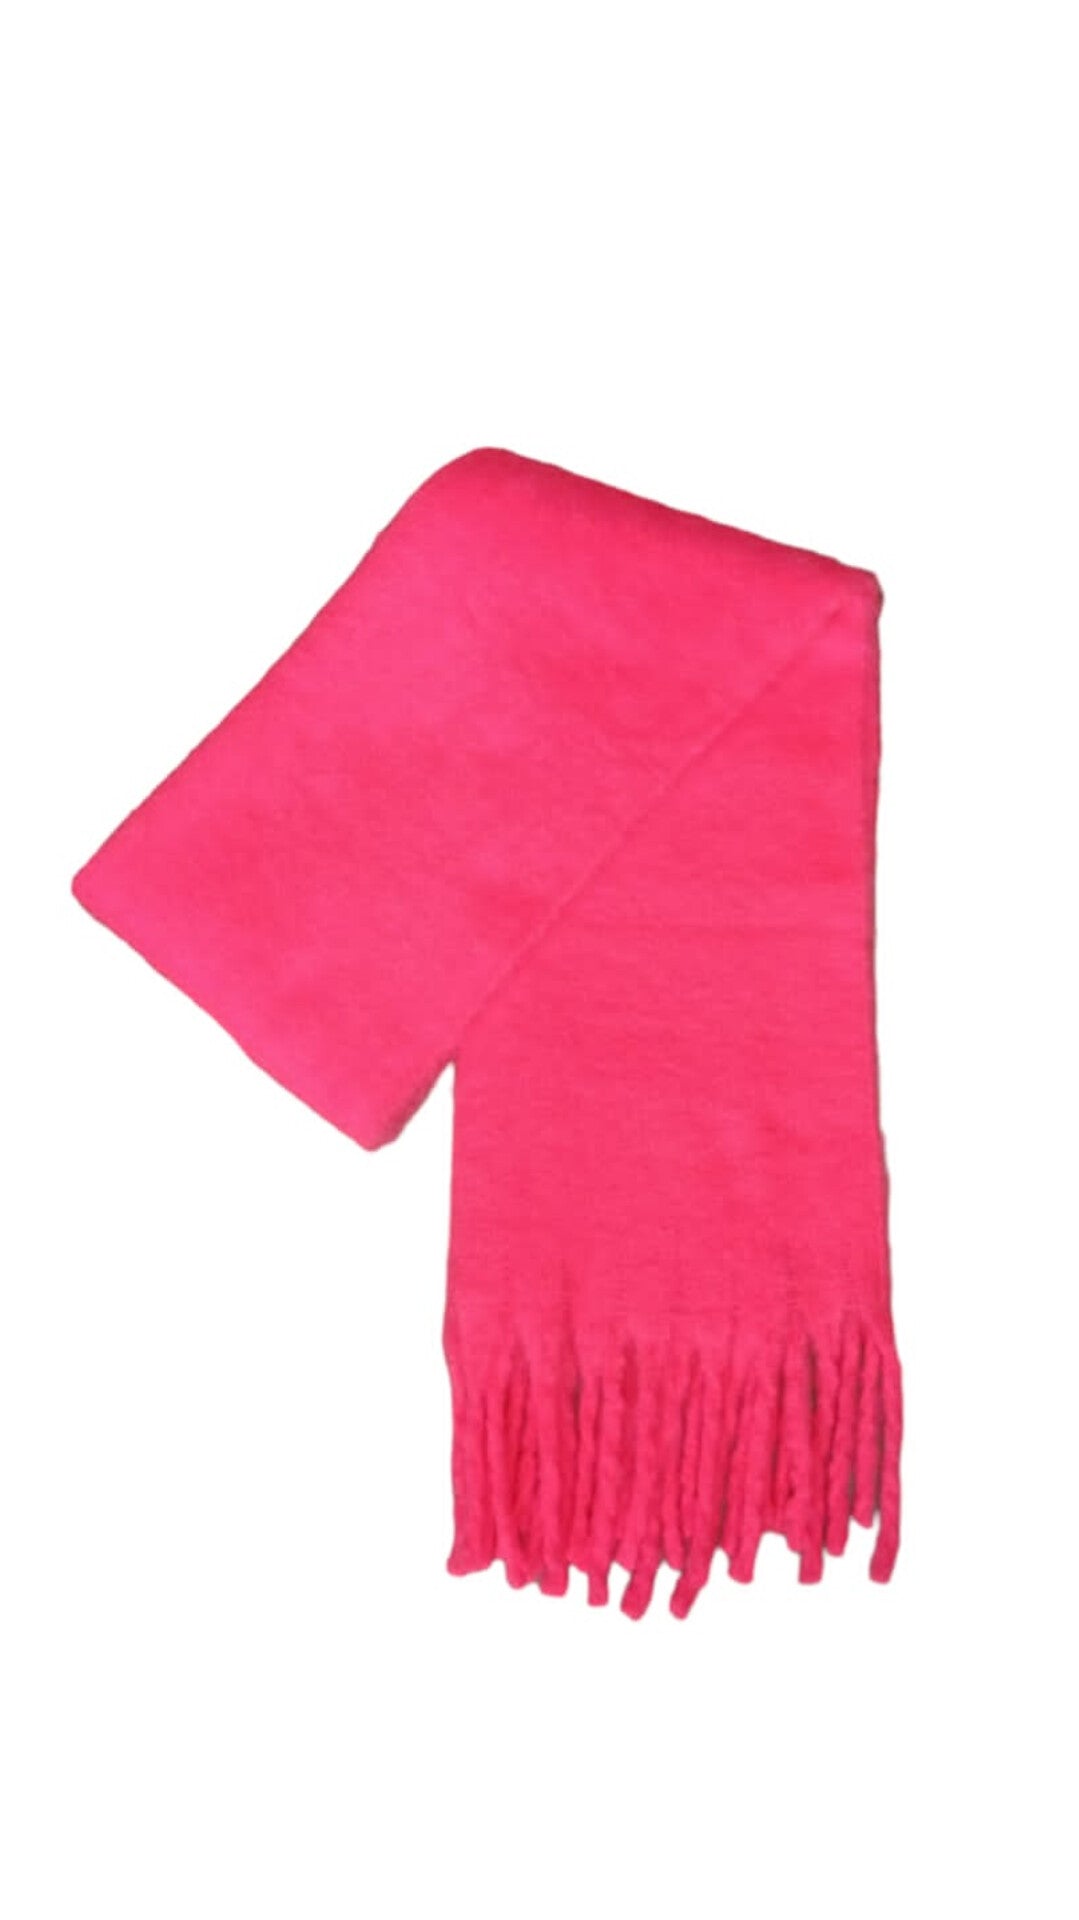 Pixel scarf- pink